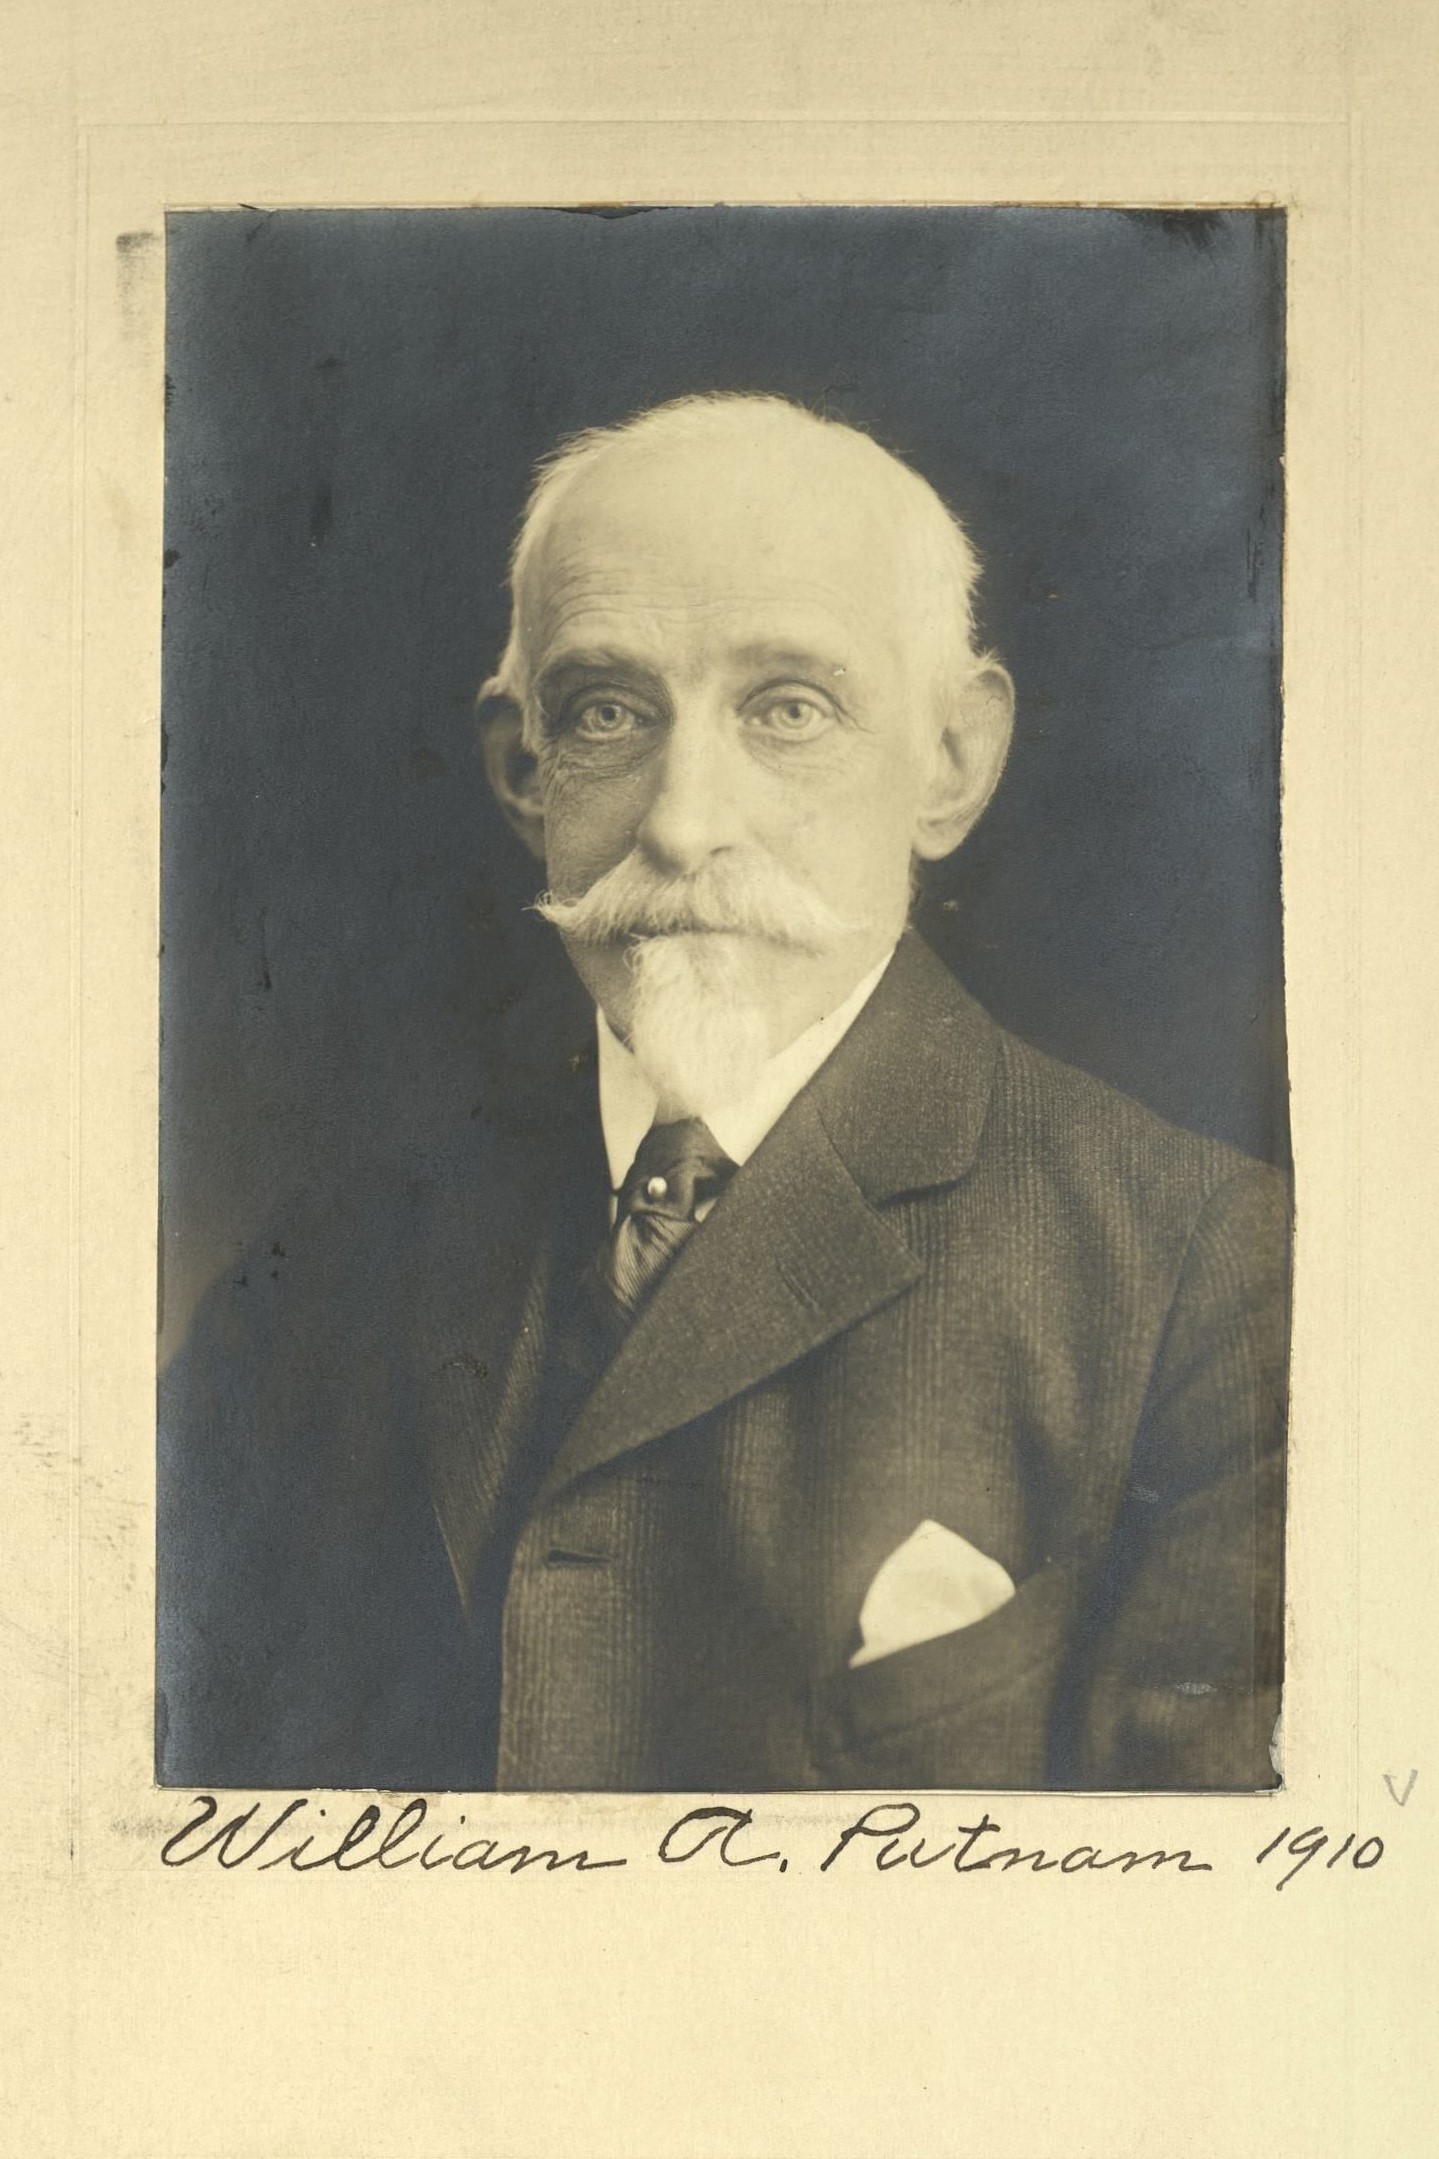 Member portrait of William A. Putnam